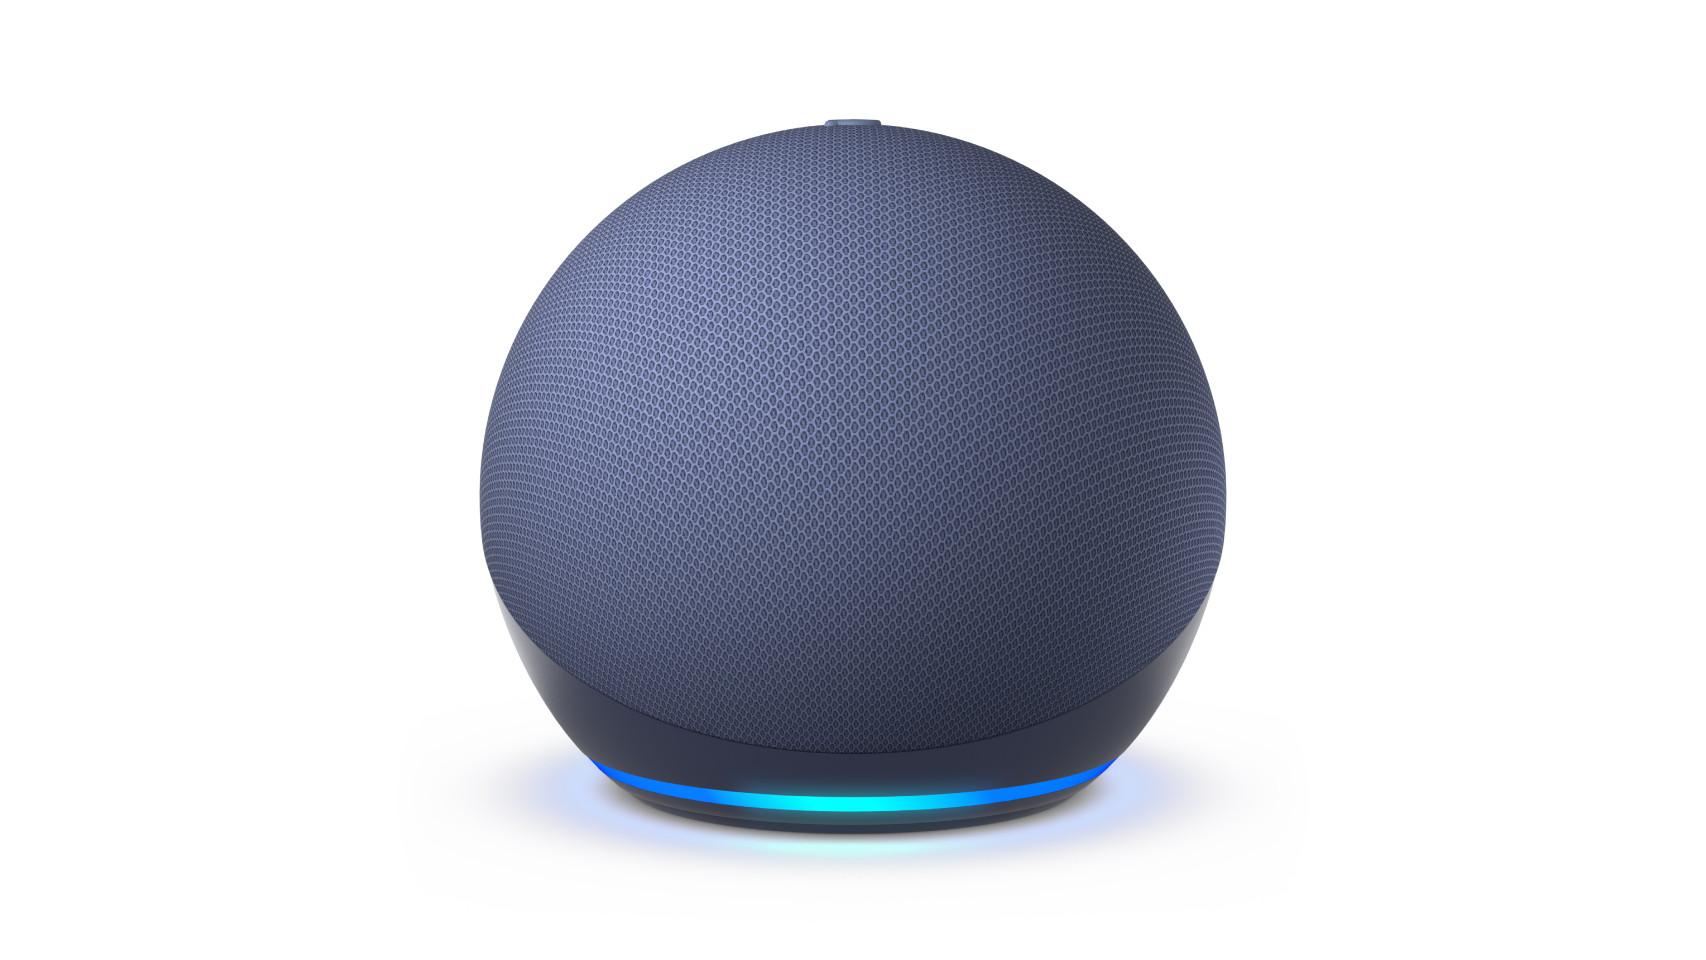 Alexa Parlante Inteligente Echo Dot 4ta Gen Asistente de voz